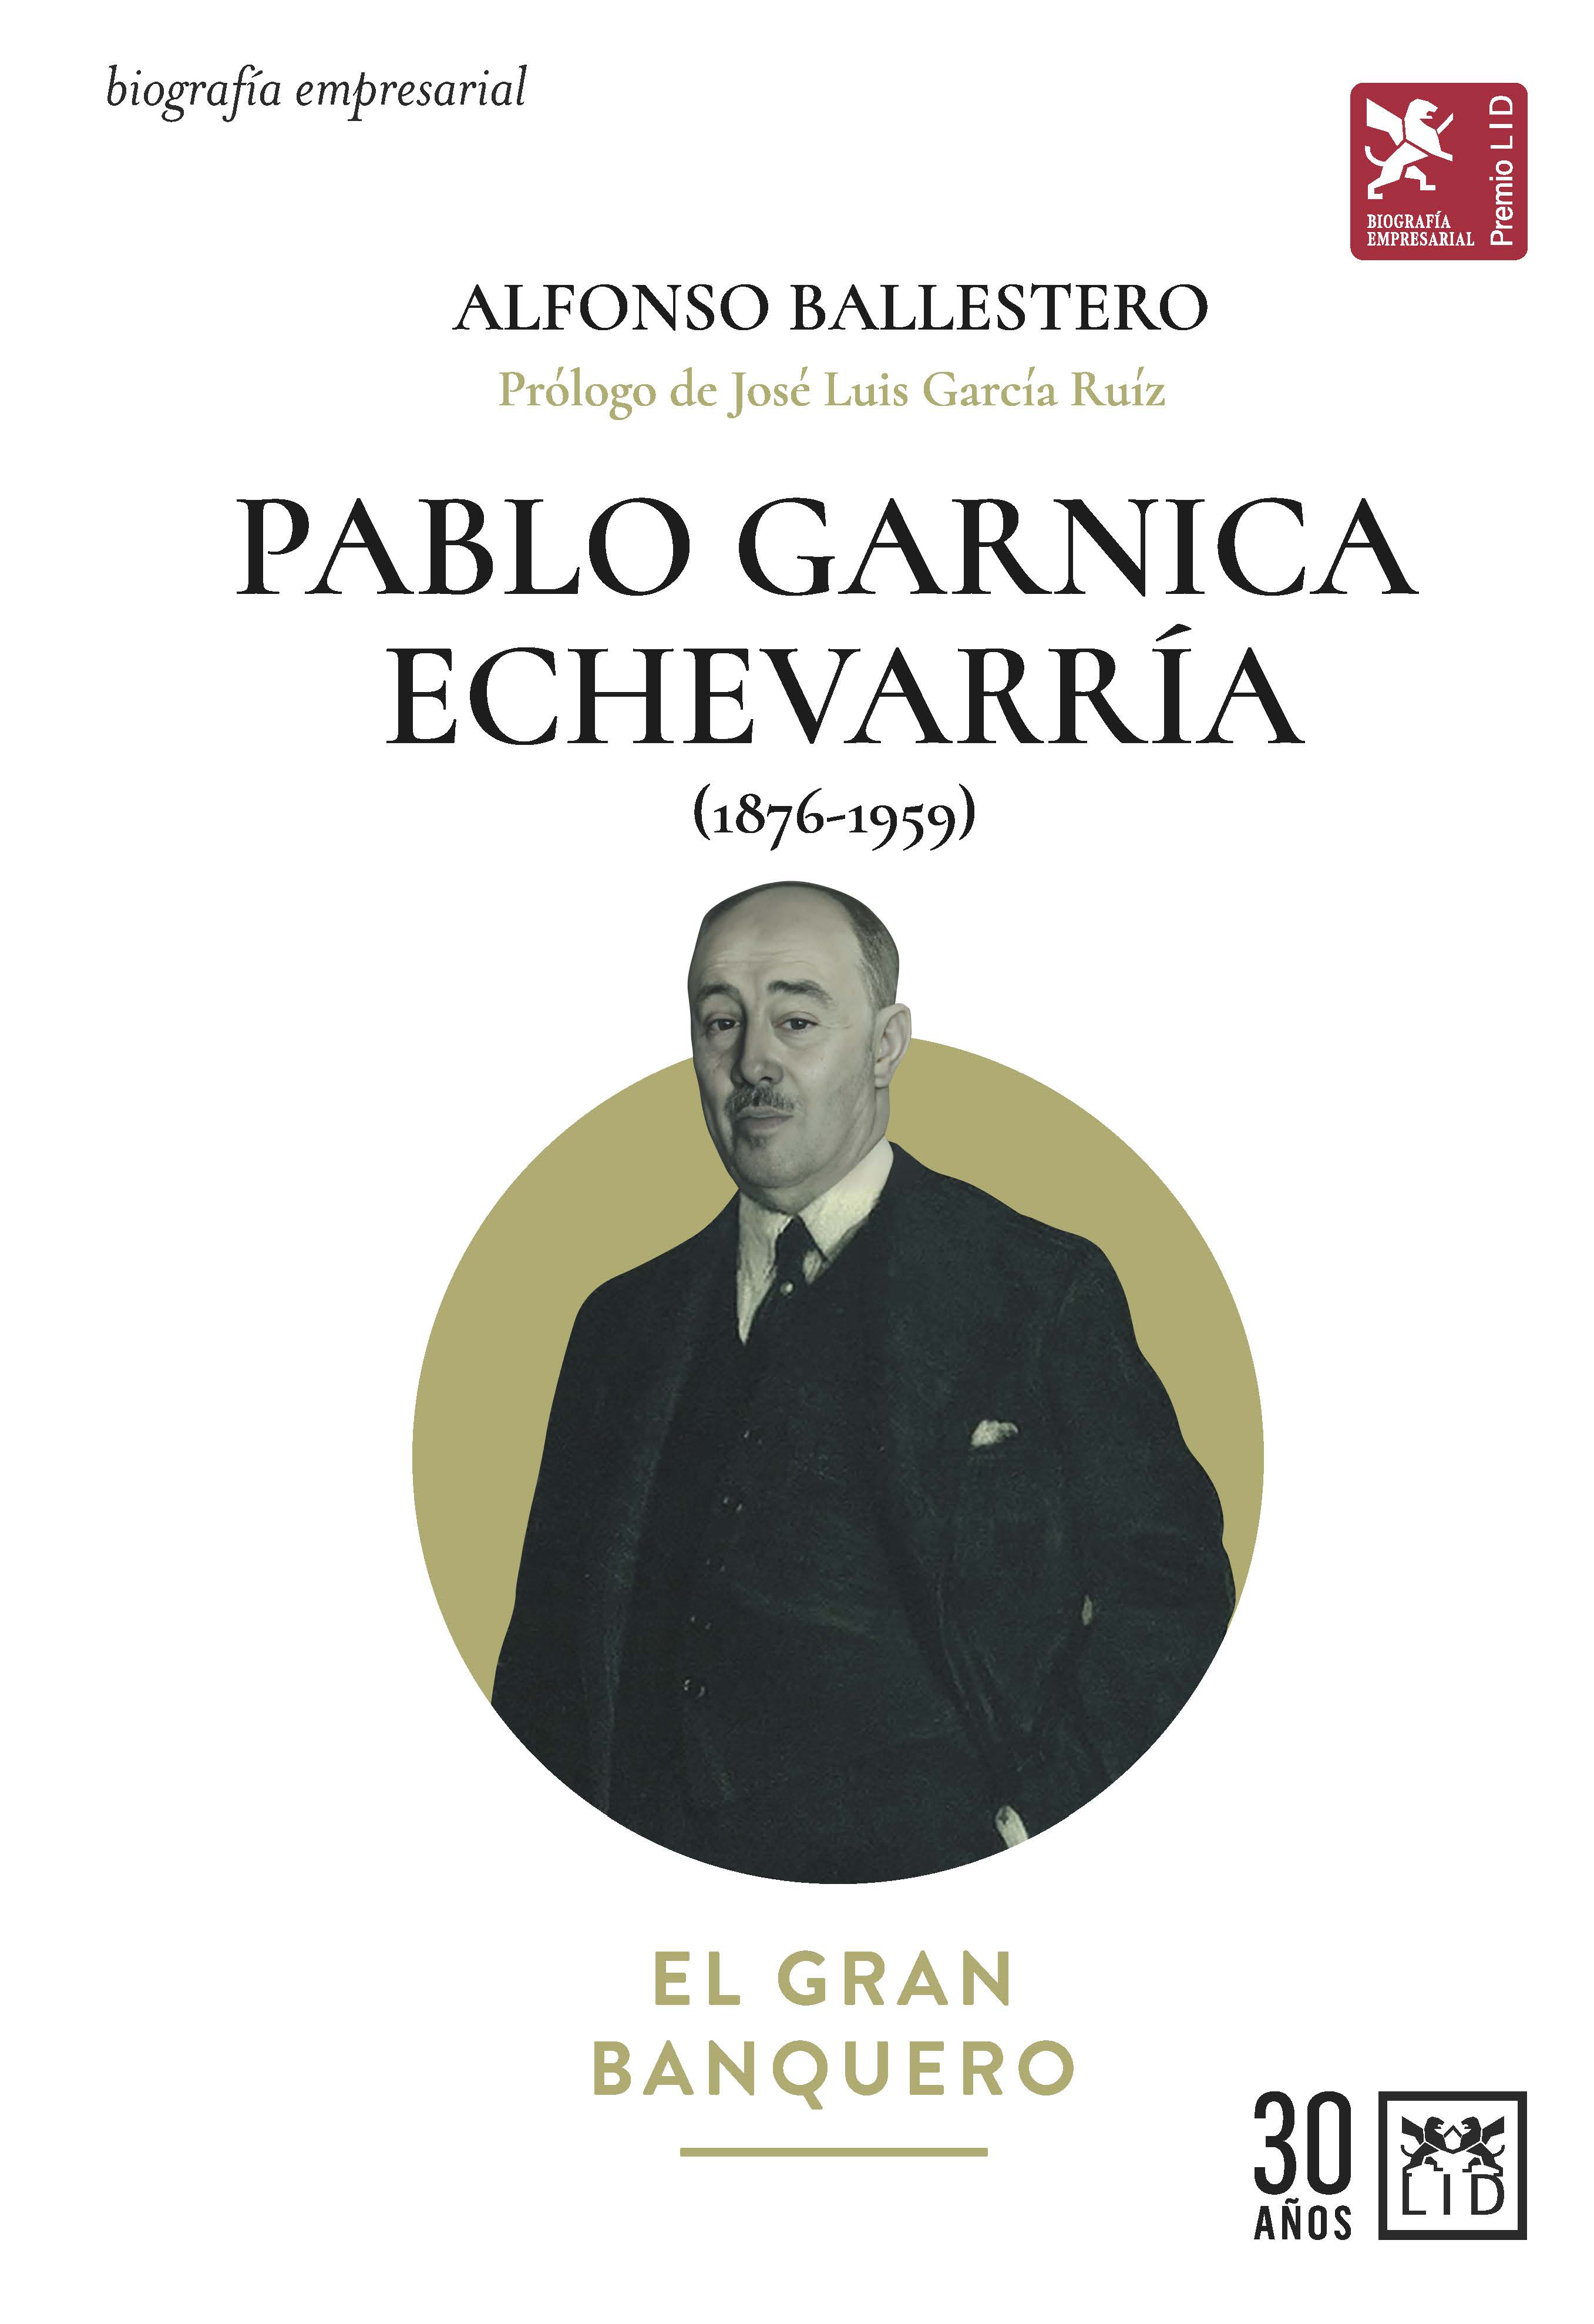 Pablo Garnica Echevarría (1876-1959)